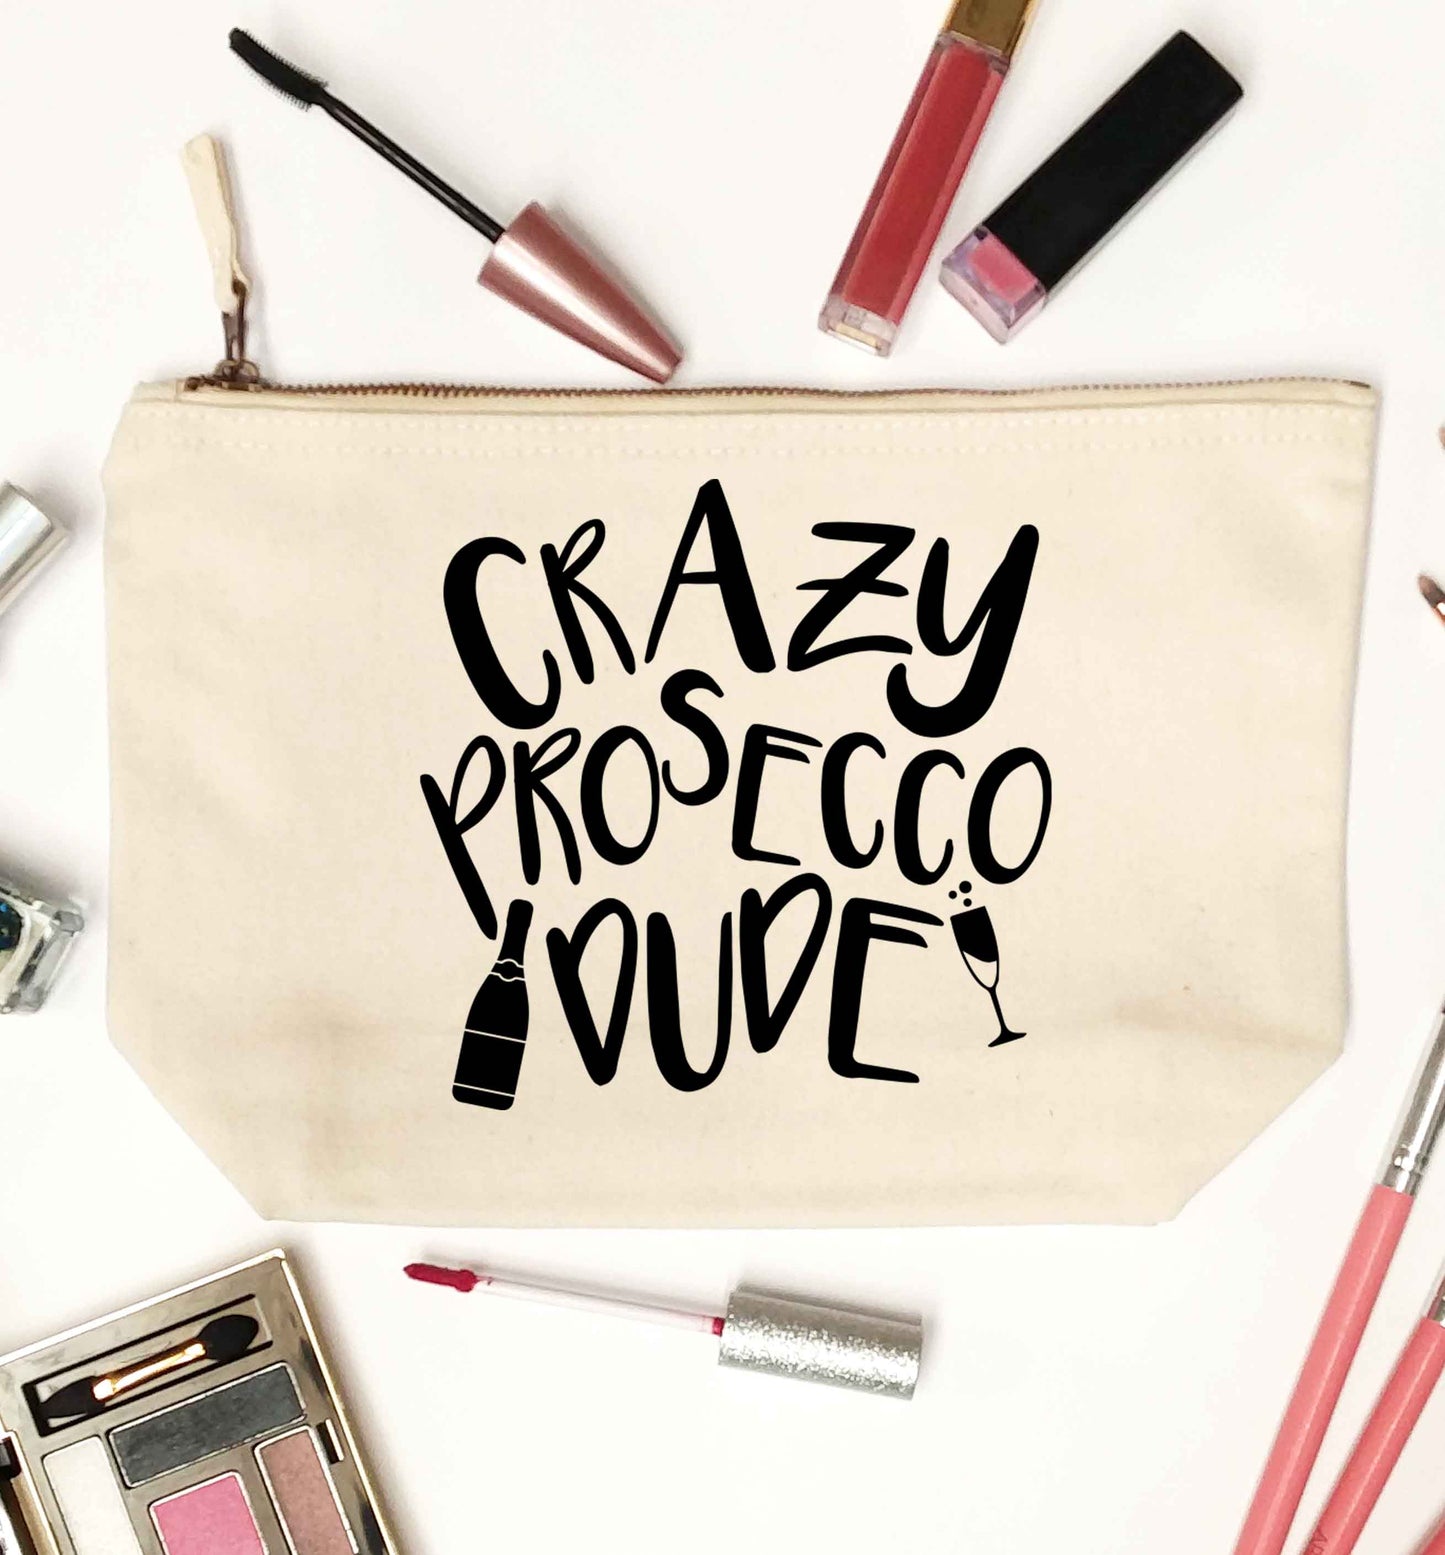 Crazy prosecco dude natural makeup bag